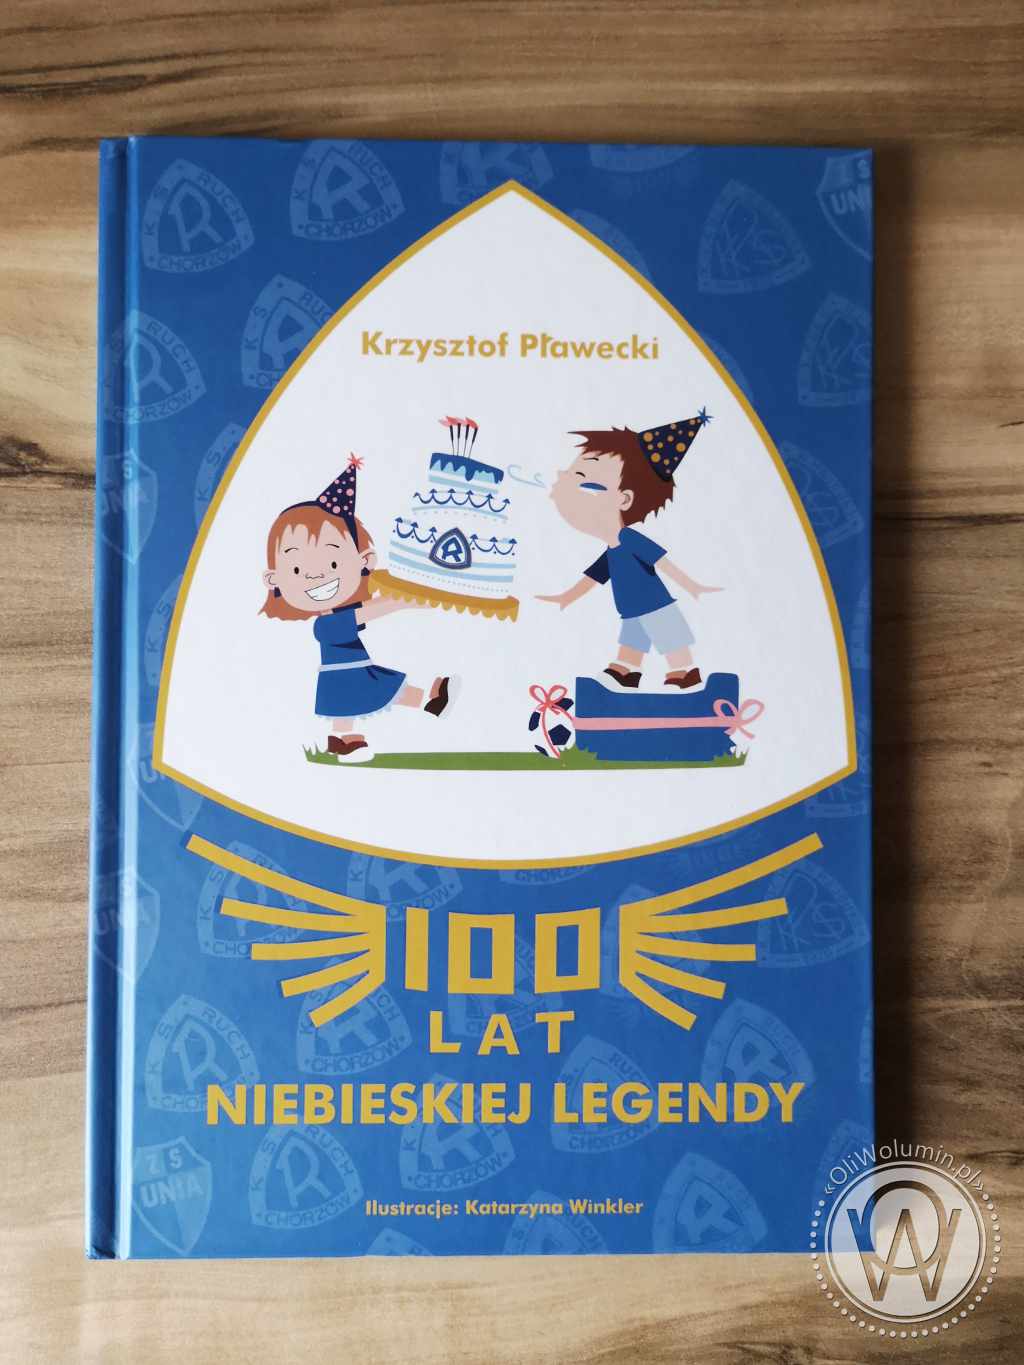 "100 lat Niebieskiej Legendy" Krzysztof Pławecki